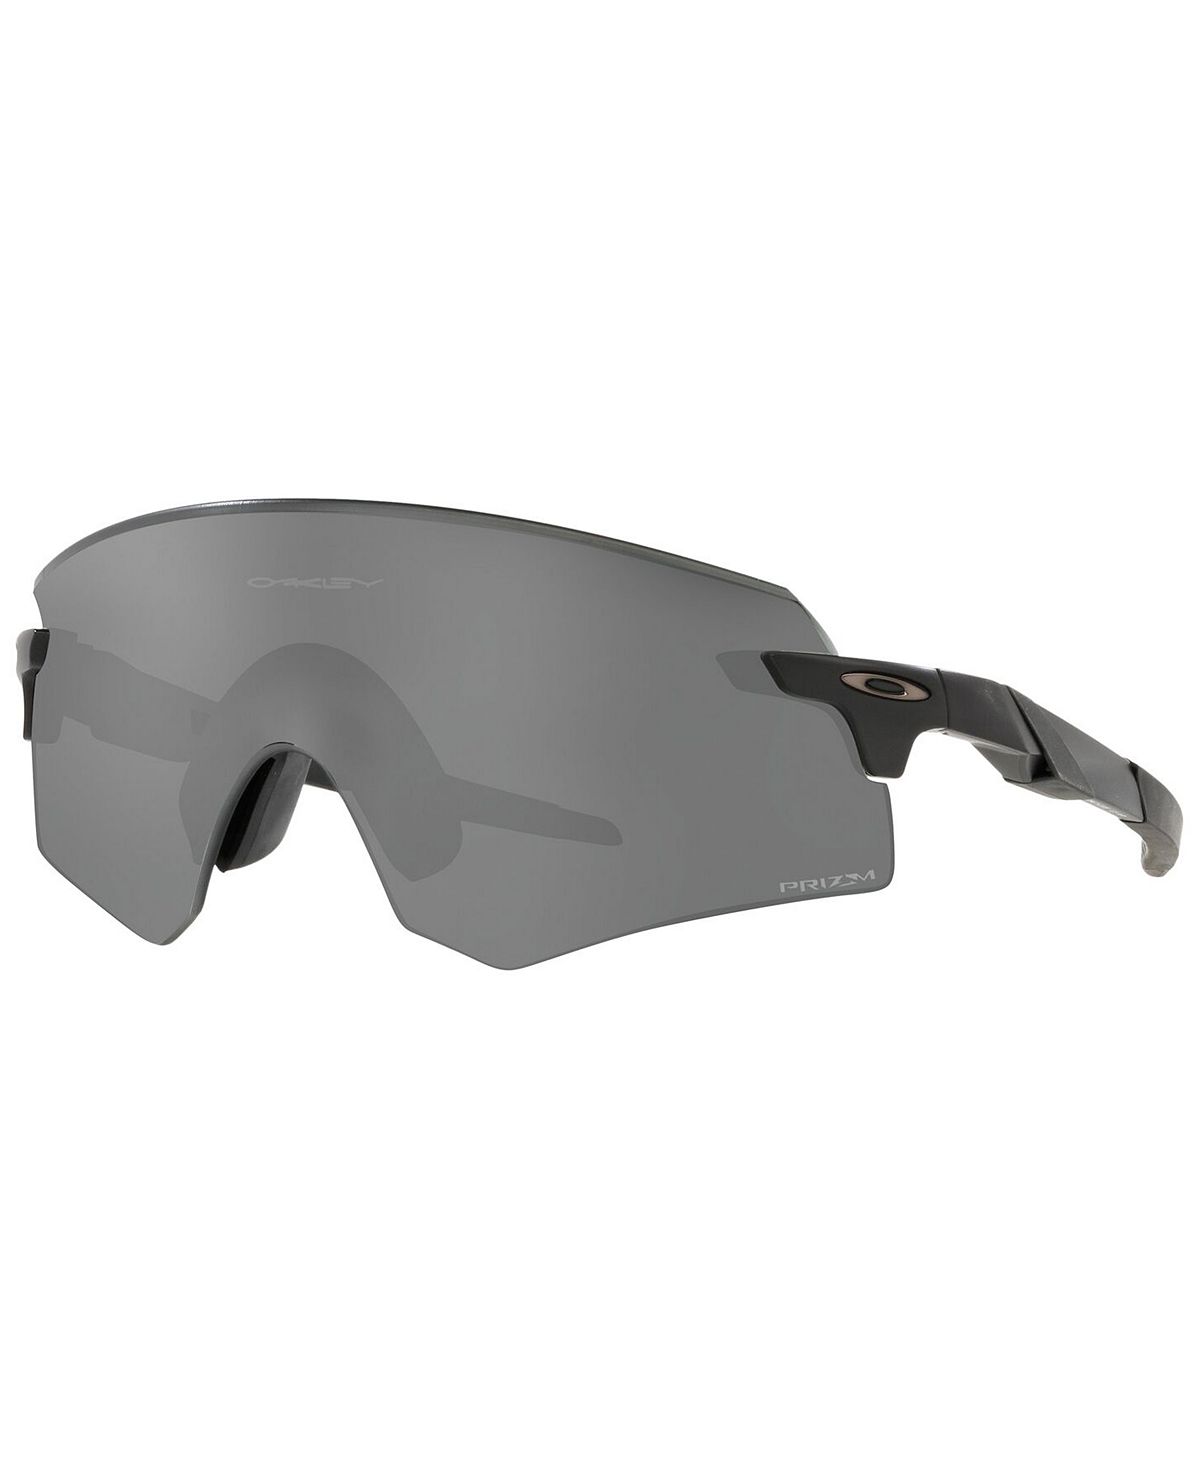 Мужские солнцезащитные очки encoder, oo9471 36 Oakley, мульти